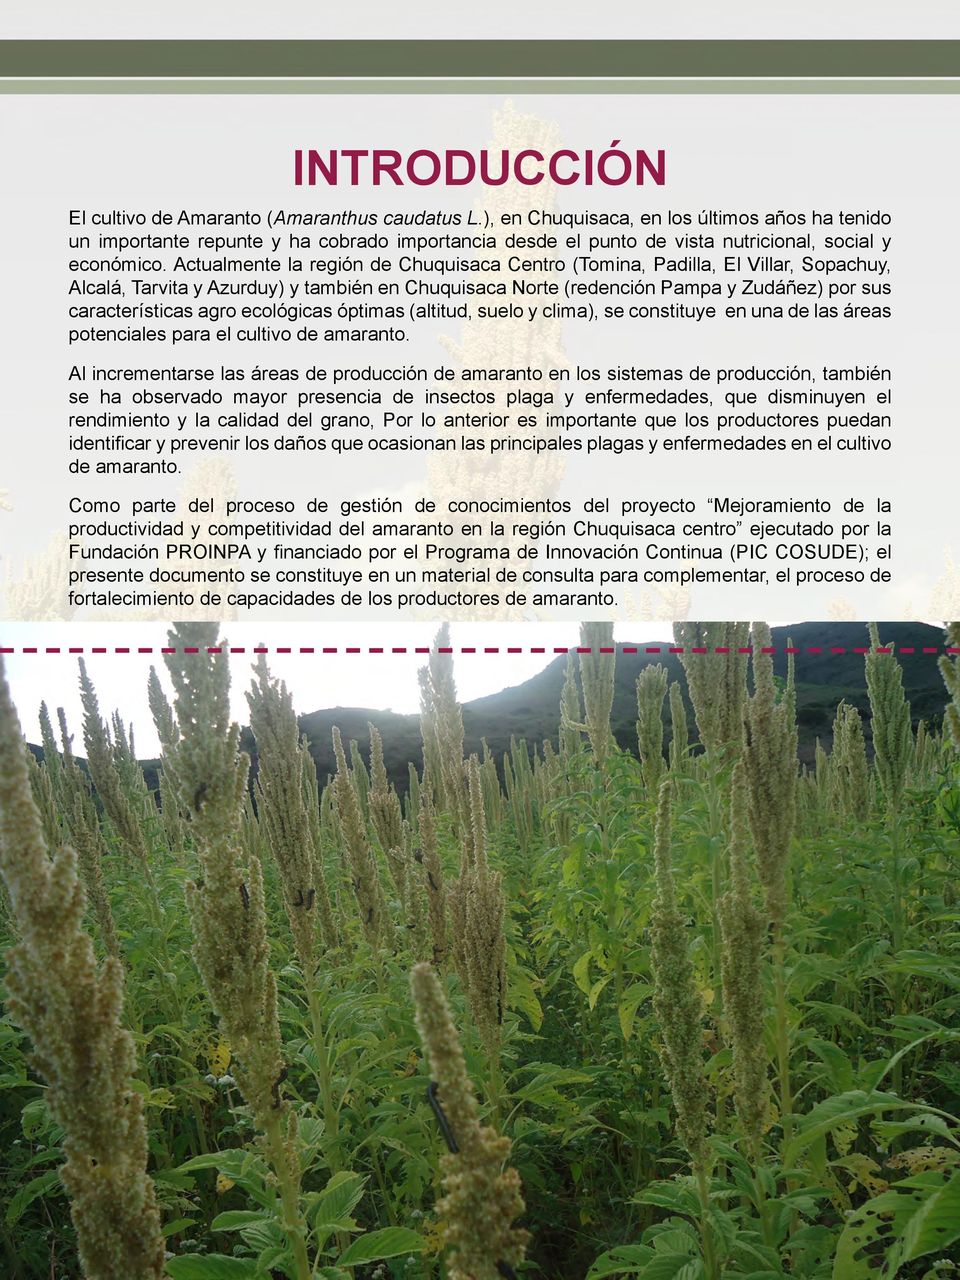 Actualmente la región de Chuquisaca Centro (Tomina, Padilla, El Villar, Sopachuy, Alcalá, Tarvita y Azurduy) y también en Chuquisaca Norte (redención Pampa y Zudáñez) por sus características agro